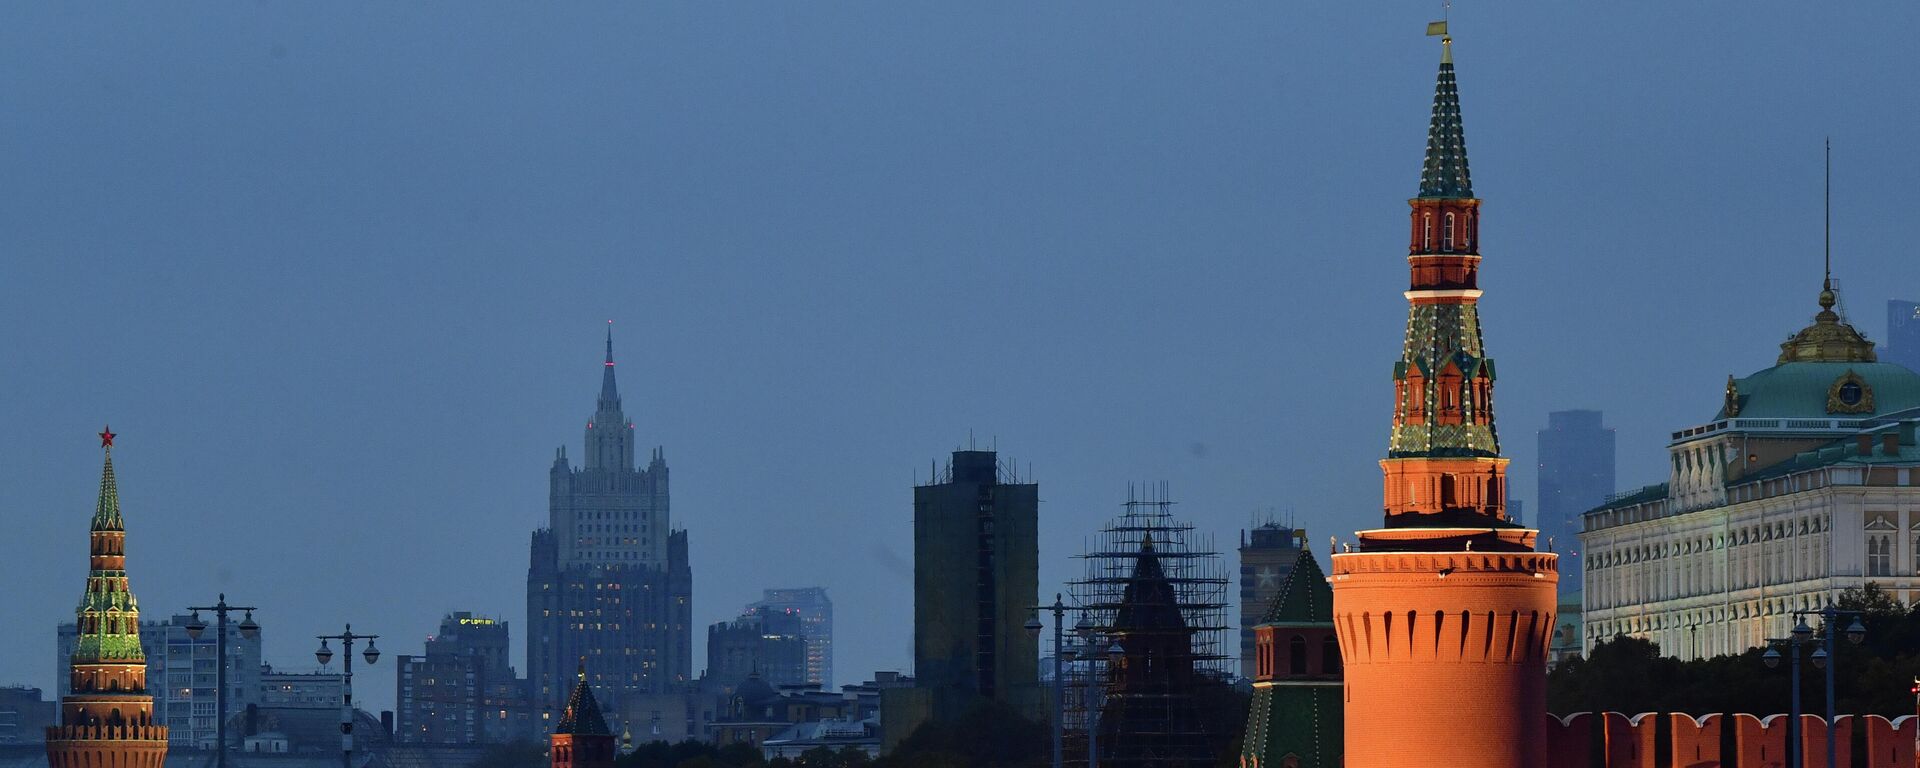 Մոսկվայի Կրեմլն ու Մեծ Մոսկվորեցկի կամուրջը - Sputnik Արմենիա, 1920, 24.01.2022